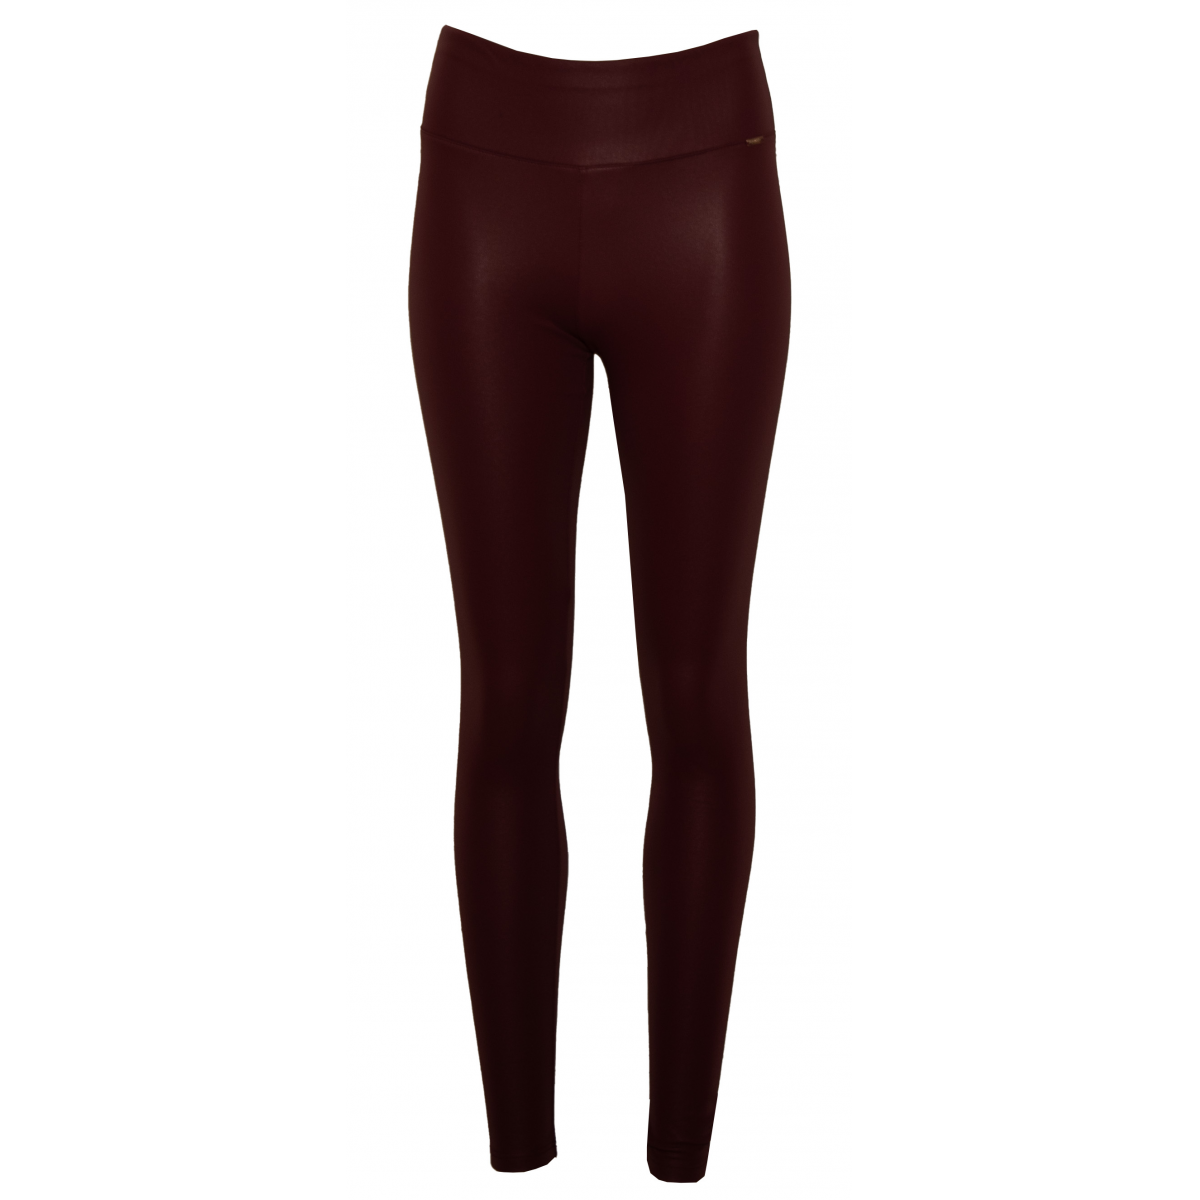 Napa leggings lined for women - OI23SN90416325